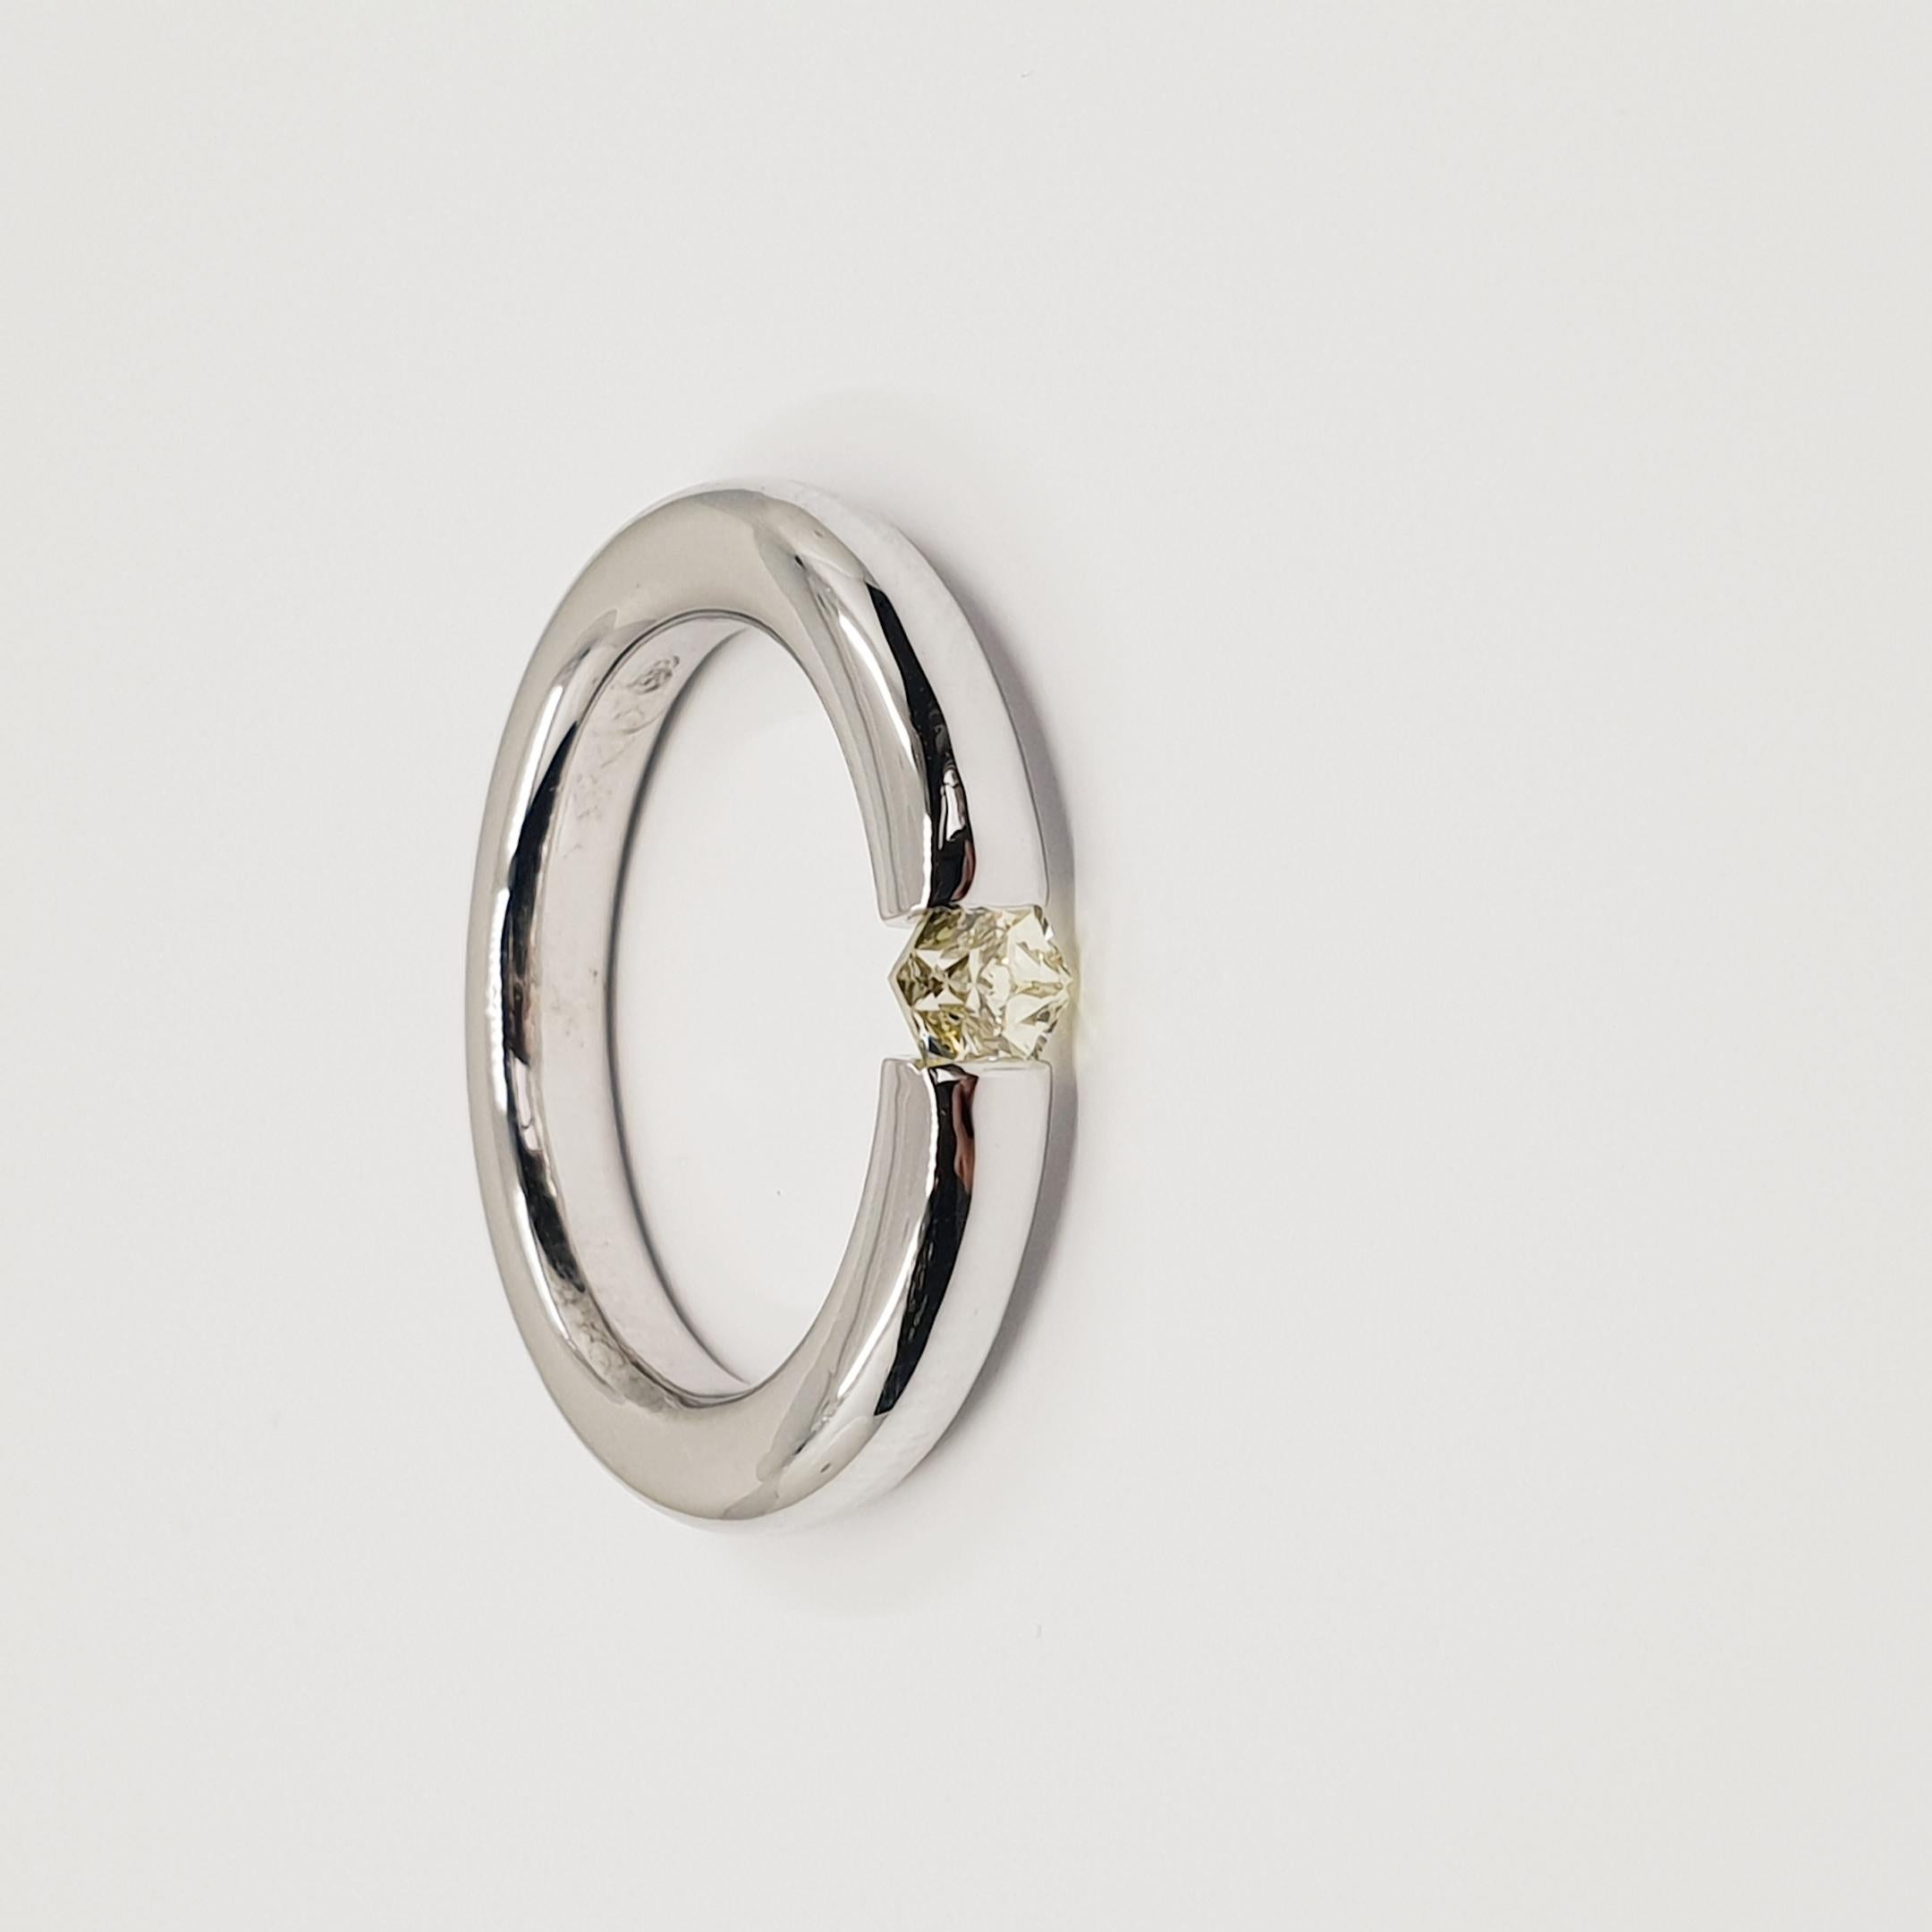 0.5 Carat Solitaire Diamond Ring F-G/VS 18k White Gold, Brilliant Cut Diamond. 
Pièce de haute joaillerie avec un total de 0,5 carat. 
Bague à tension faite à la main avec un diamant 